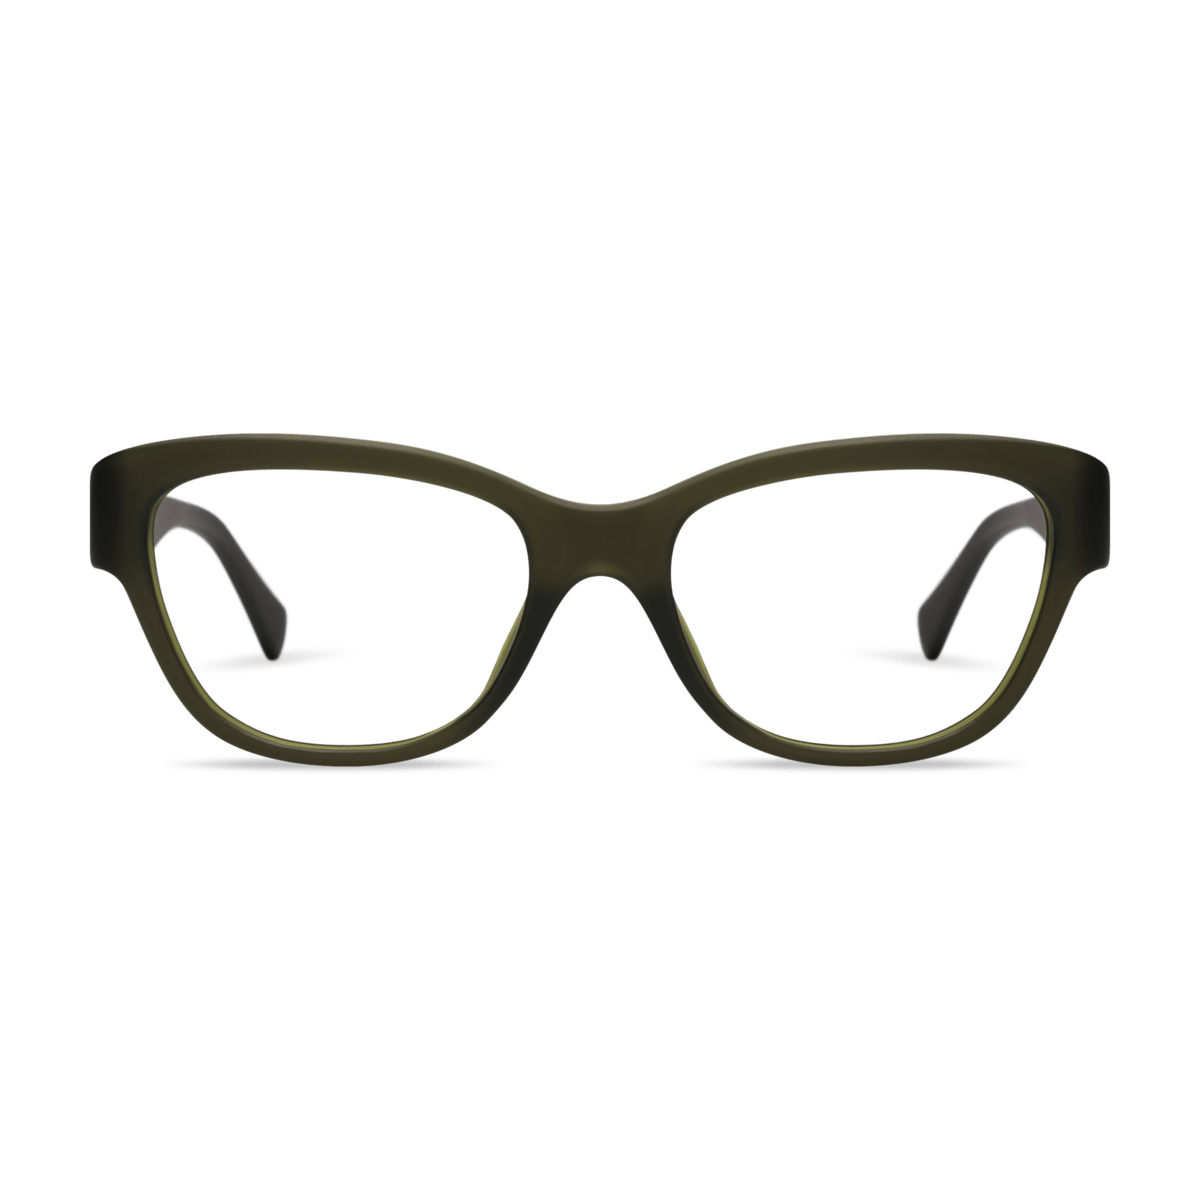 Milla Readers Eyeglasses LOOK OPTIC Forest Green +1.00 